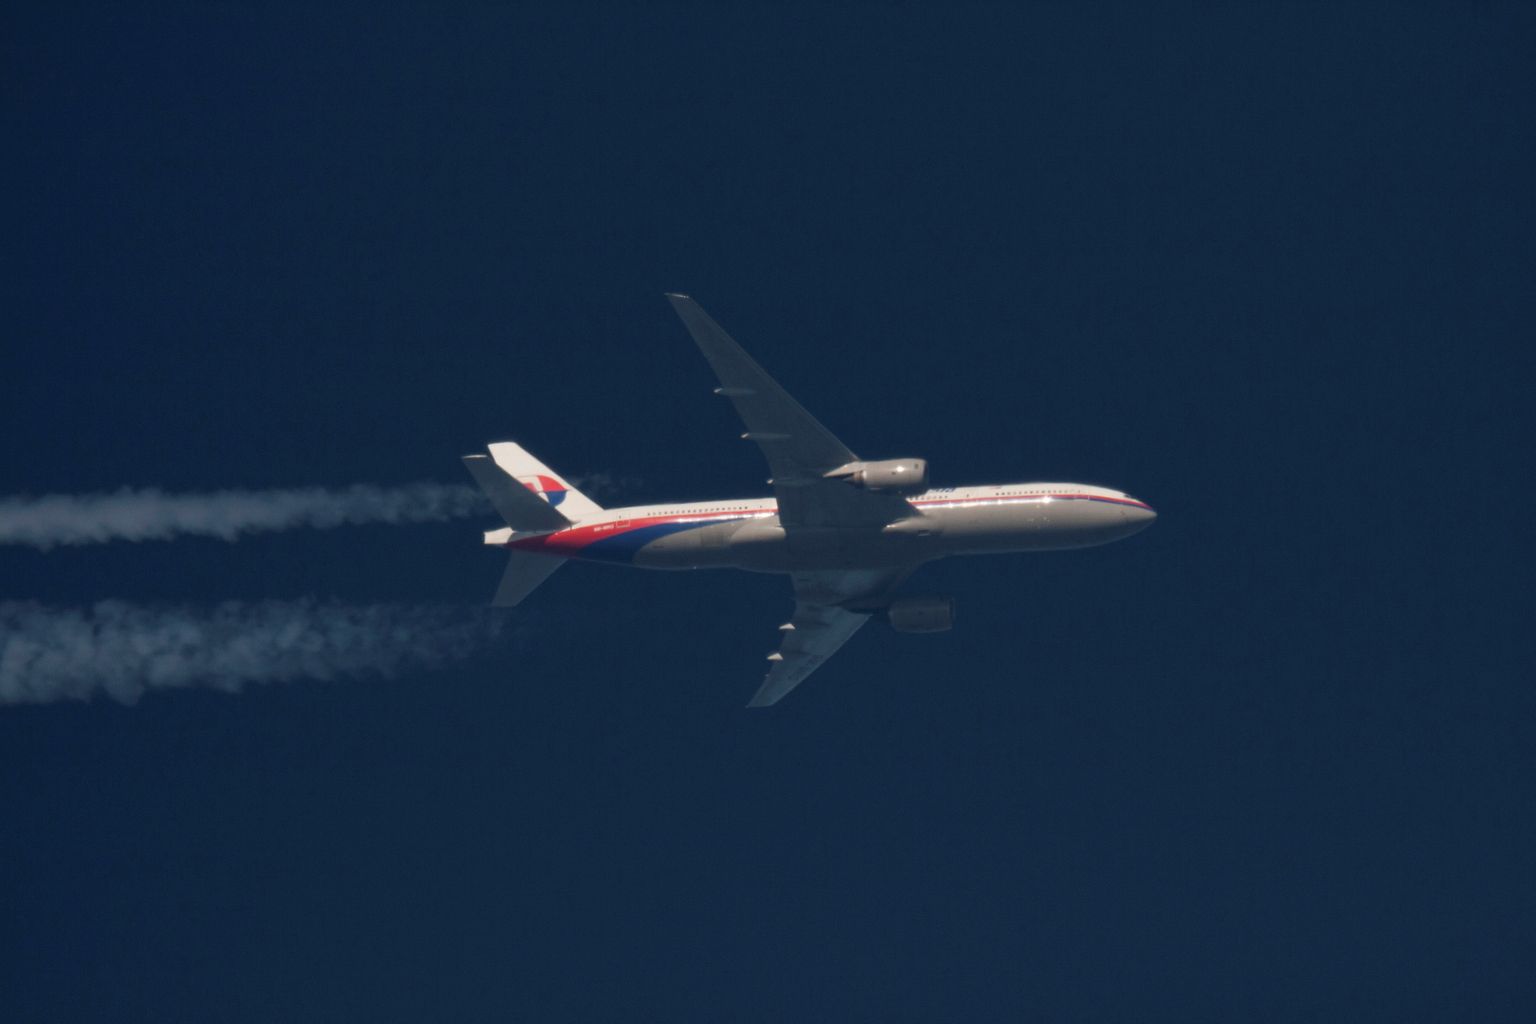 Malaysia Airlinesi Boeing 777. Sarnane jäi 8. märtsil 2014 Lõuna-Hiina mere kohal kadunuks